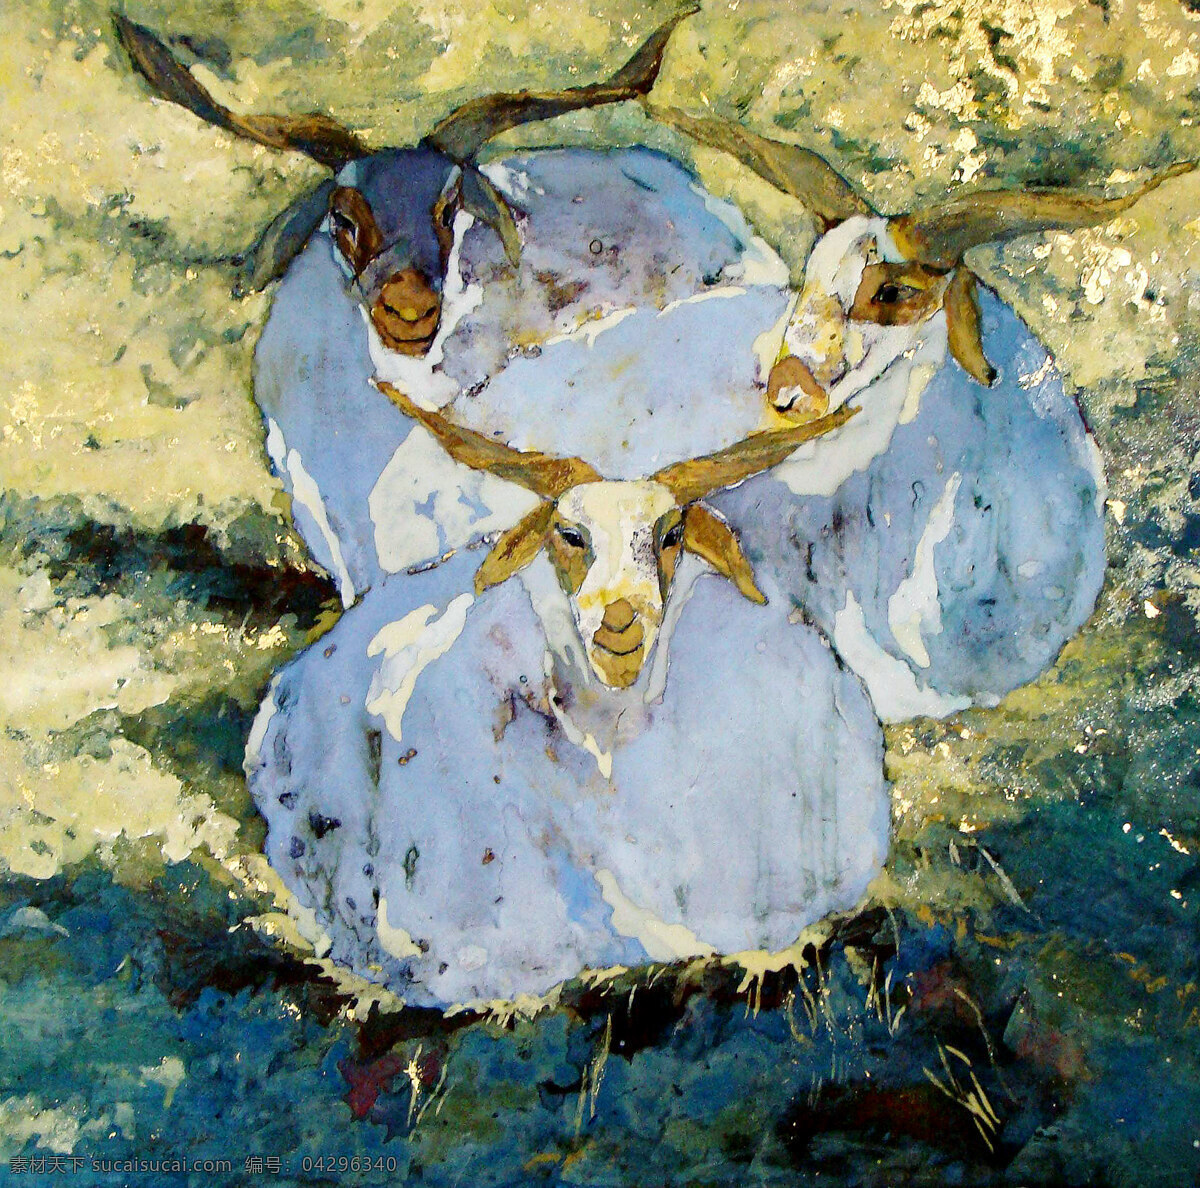 三羊开泰 美术 绘画 油画 现代油画 动物画 羊 白羊 草地 天空 油画艺术 油画作品10 绘画书法 文化艺术